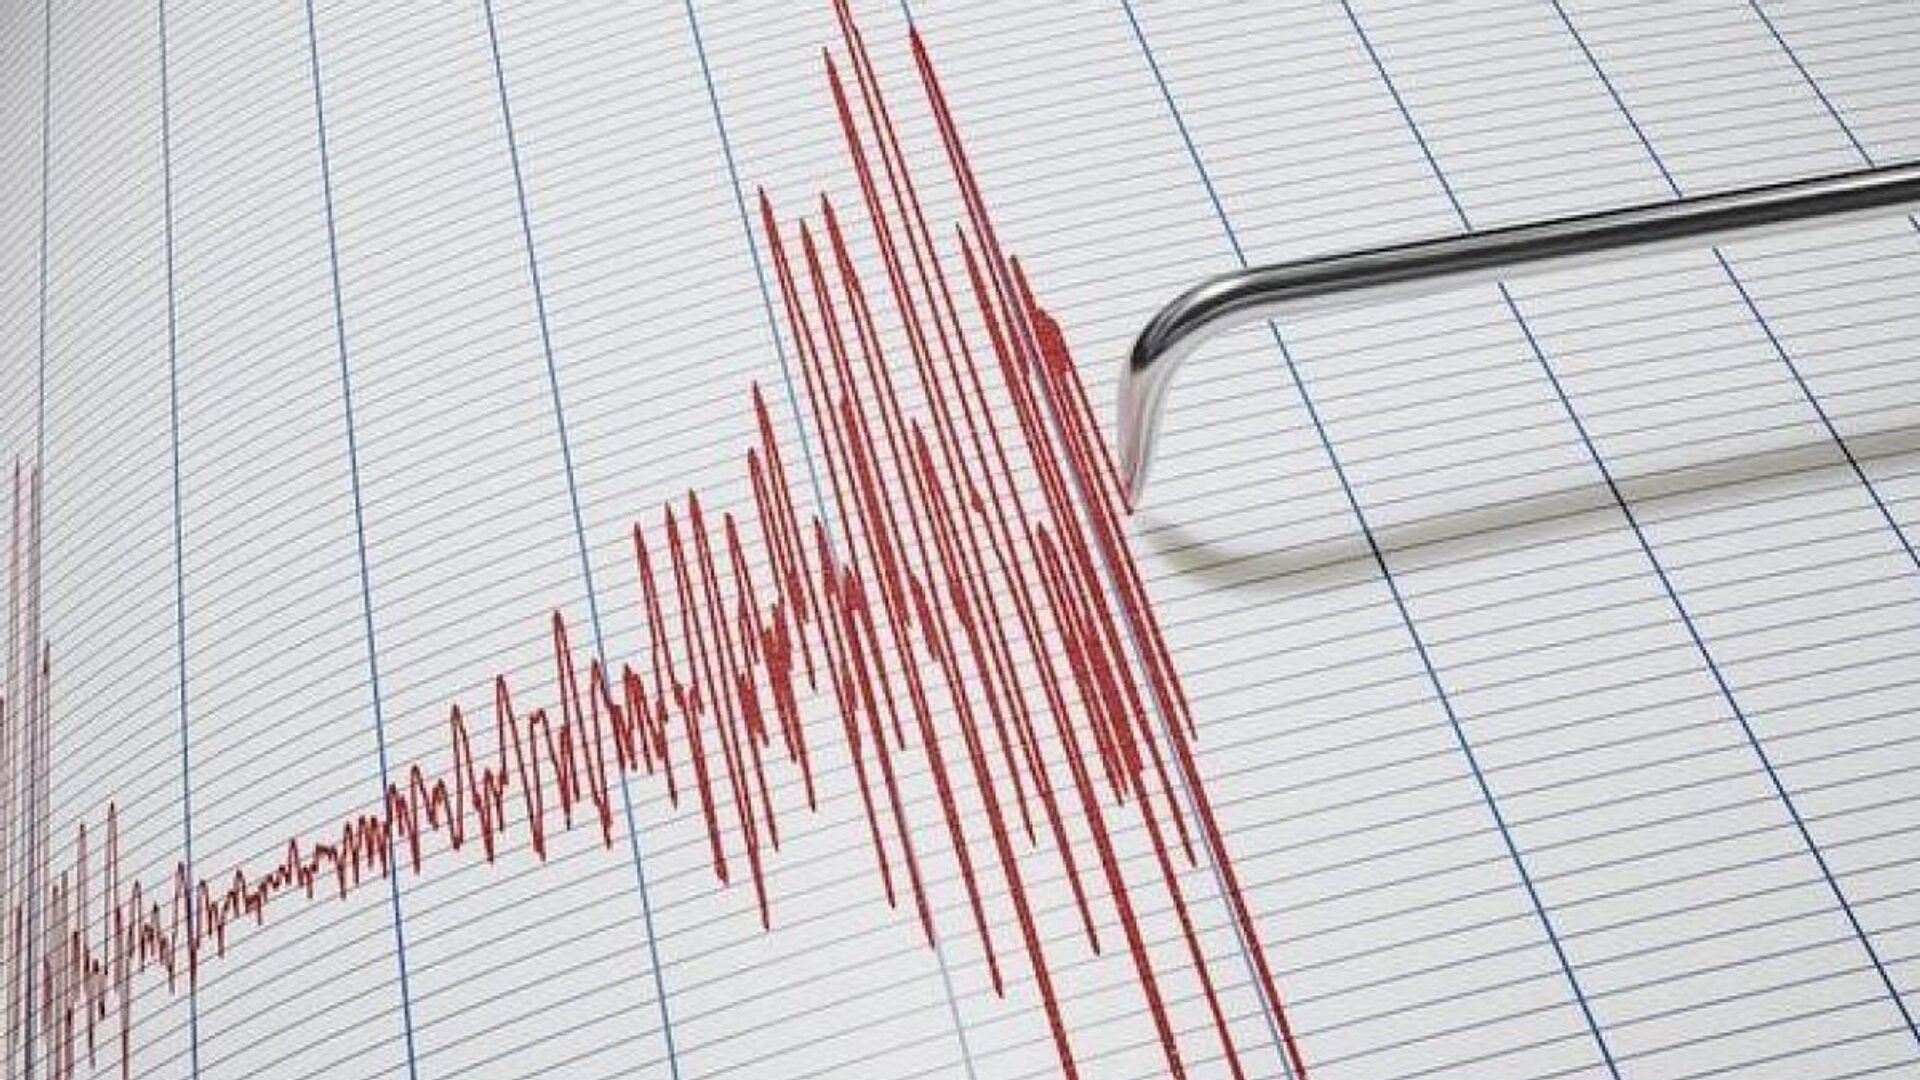 Son Depremler: Bursa Gemlik'te 5.1 ve 4.5 büyüklüğünde 2 deprem